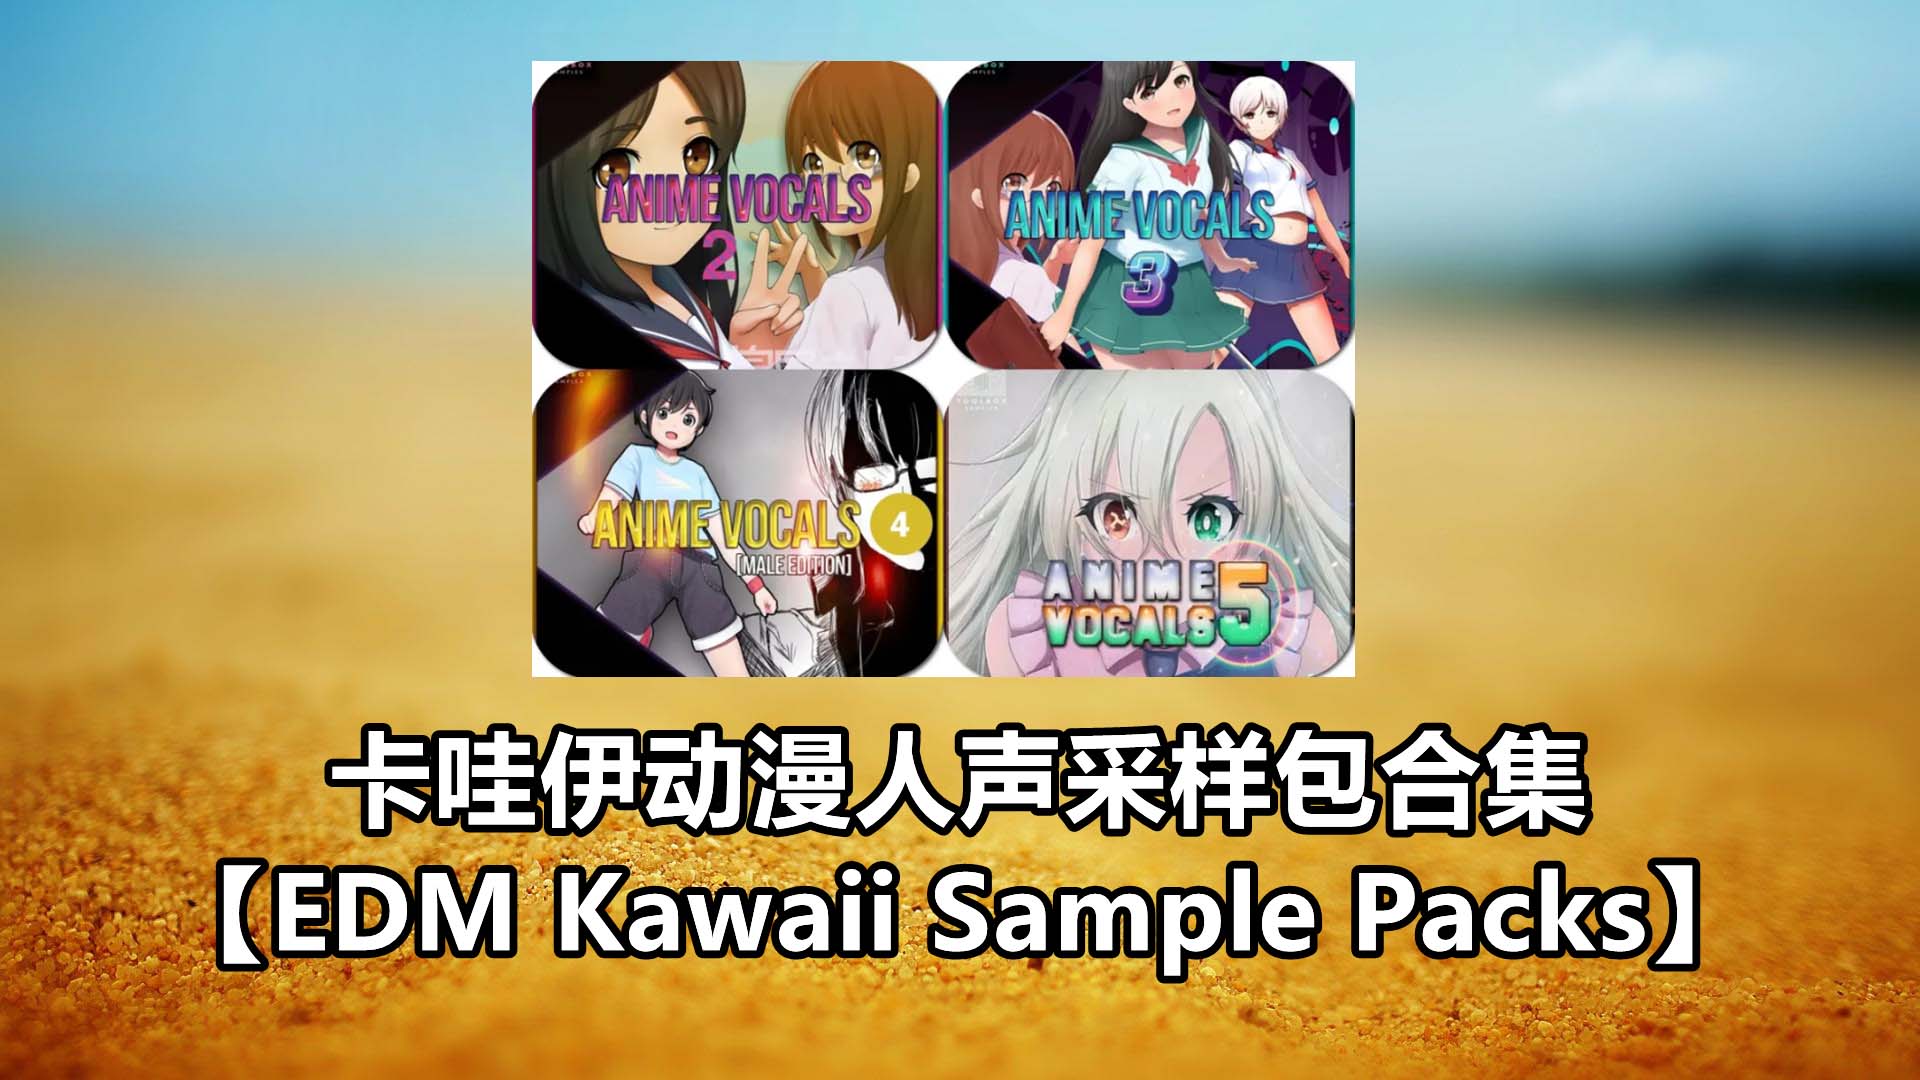 卡哇伊动漫人声采样包合集【EDM Kawaii Sample Packs】